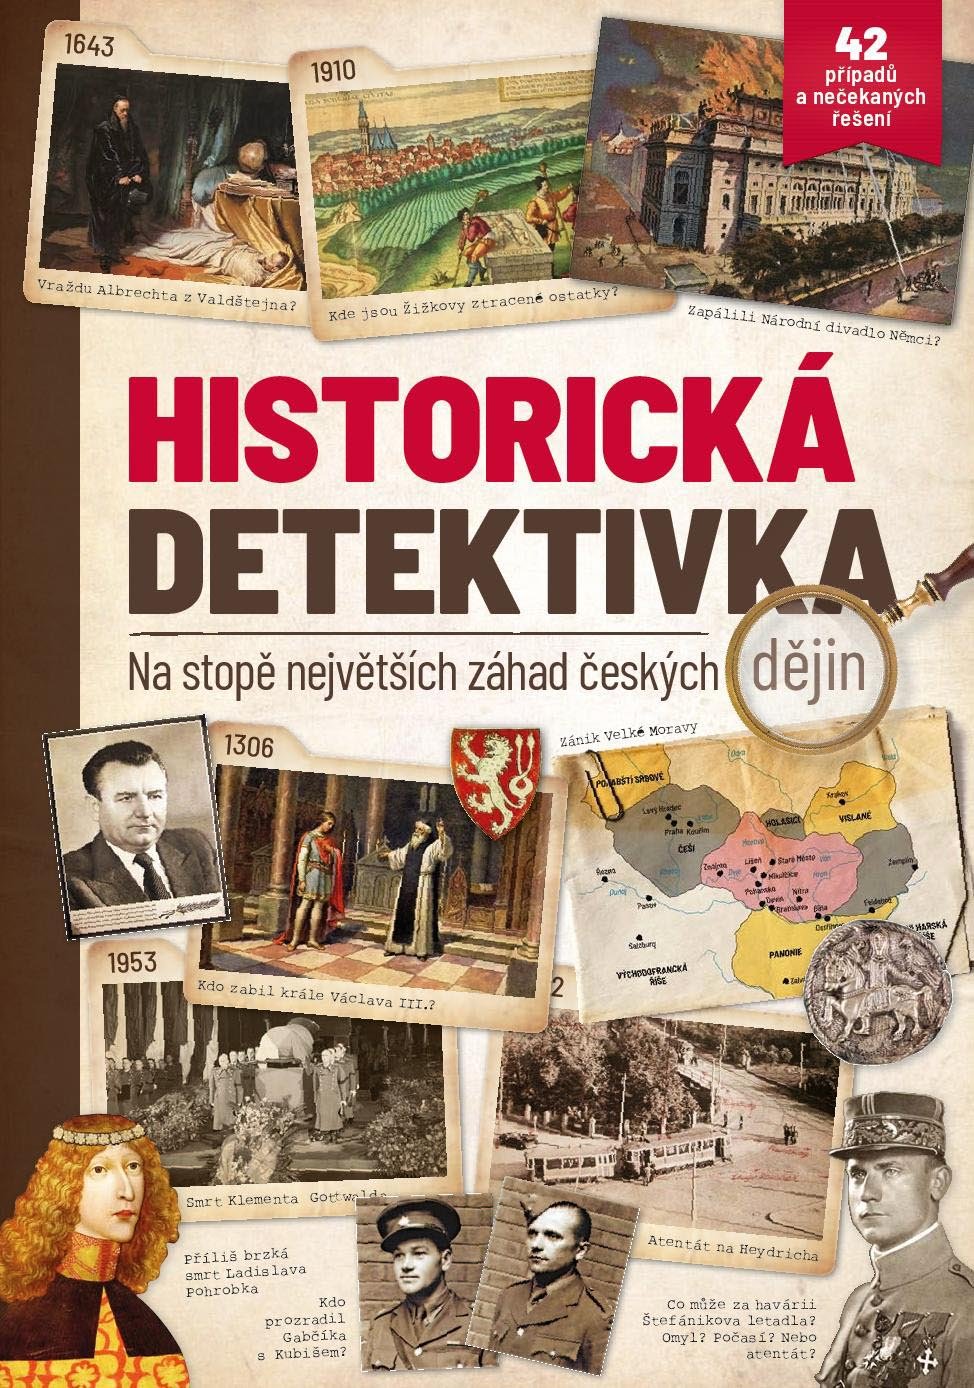 Historická detektivka - Na stopě největších záhad českých dějin - kolektiv autorů